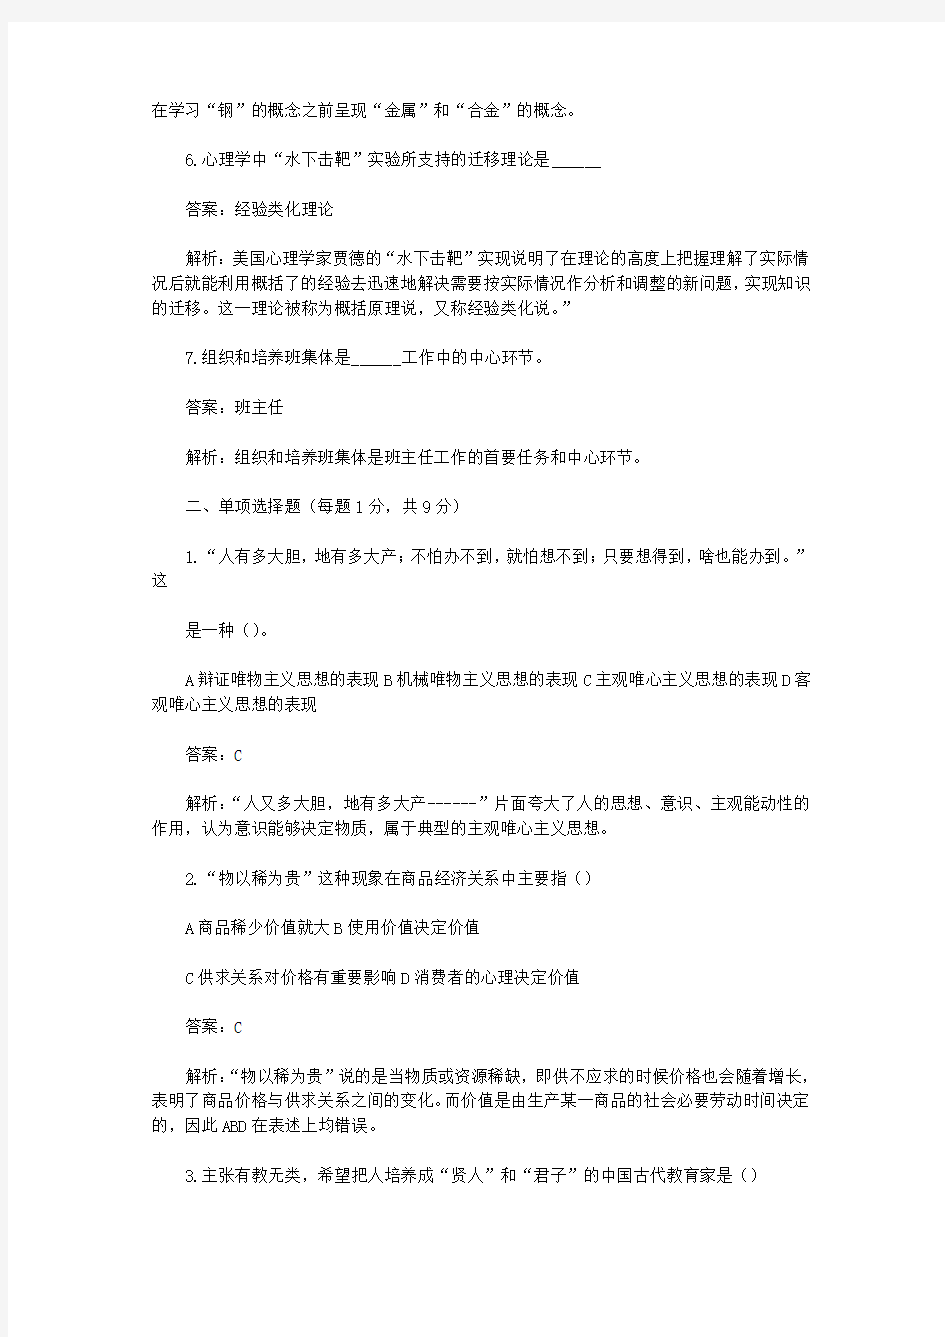 2014河北邯郸教师招聘考试公共基础知识真题及答案